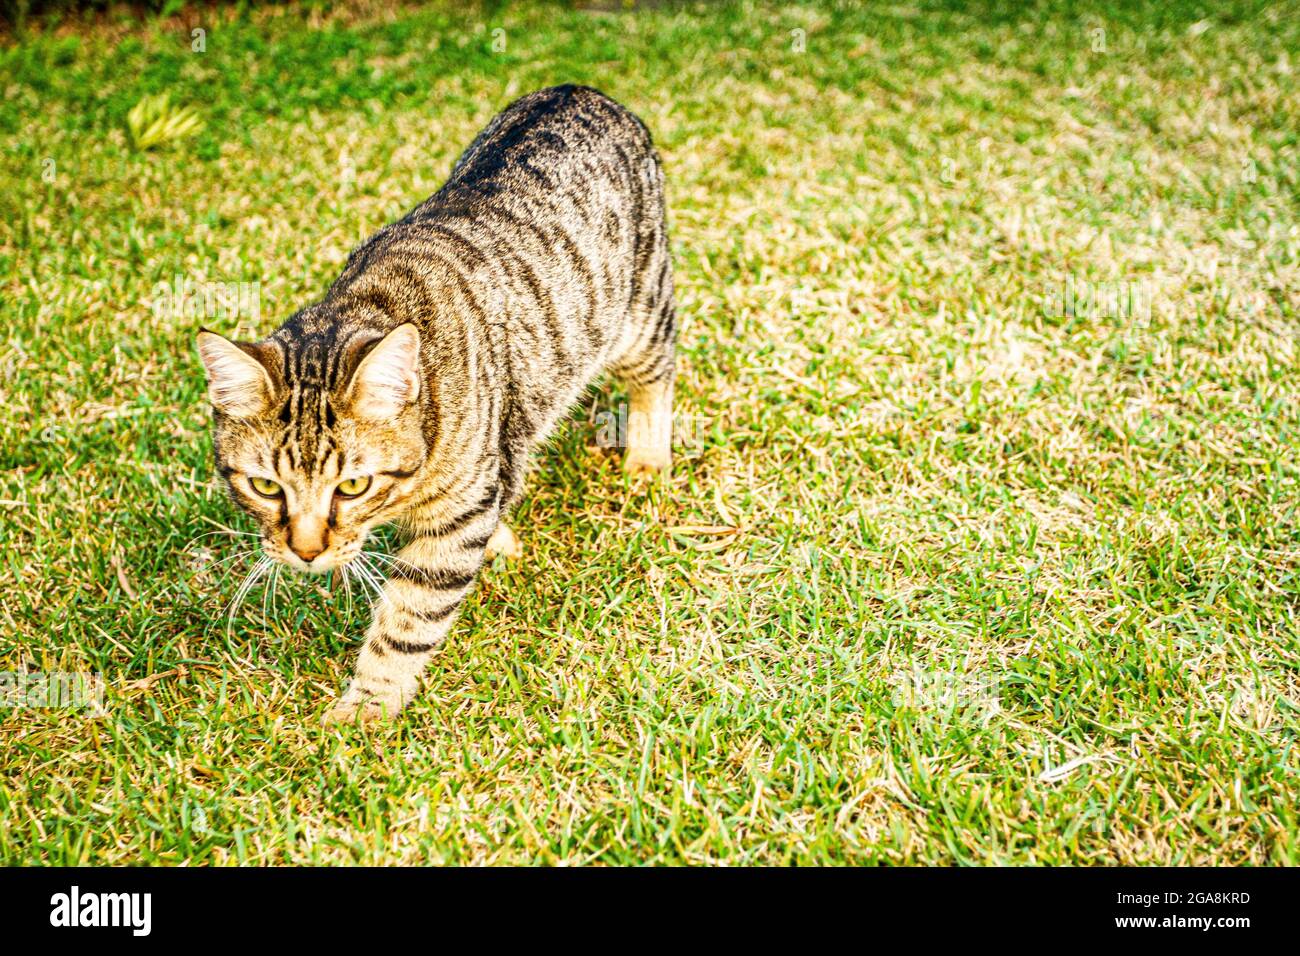 Gato doméstico (Felis catus) caminando sobre la hierba. Florianopolis, Santa Catarina, Brasil. Foto de stock